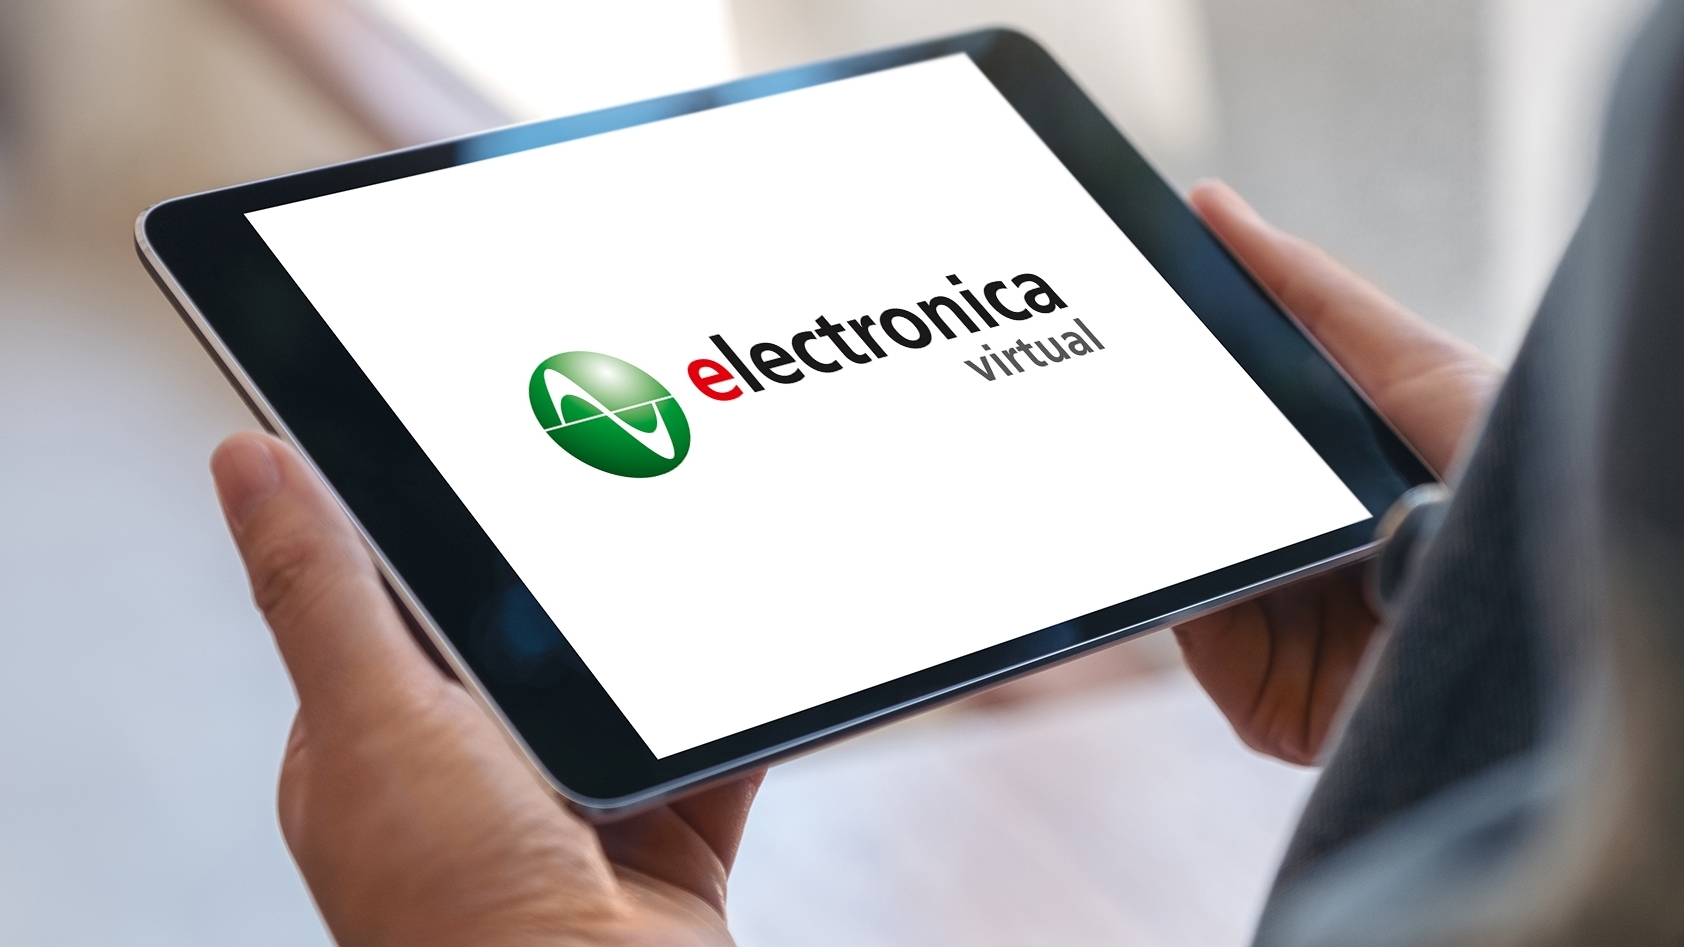 electronica 2020 findet digital statt